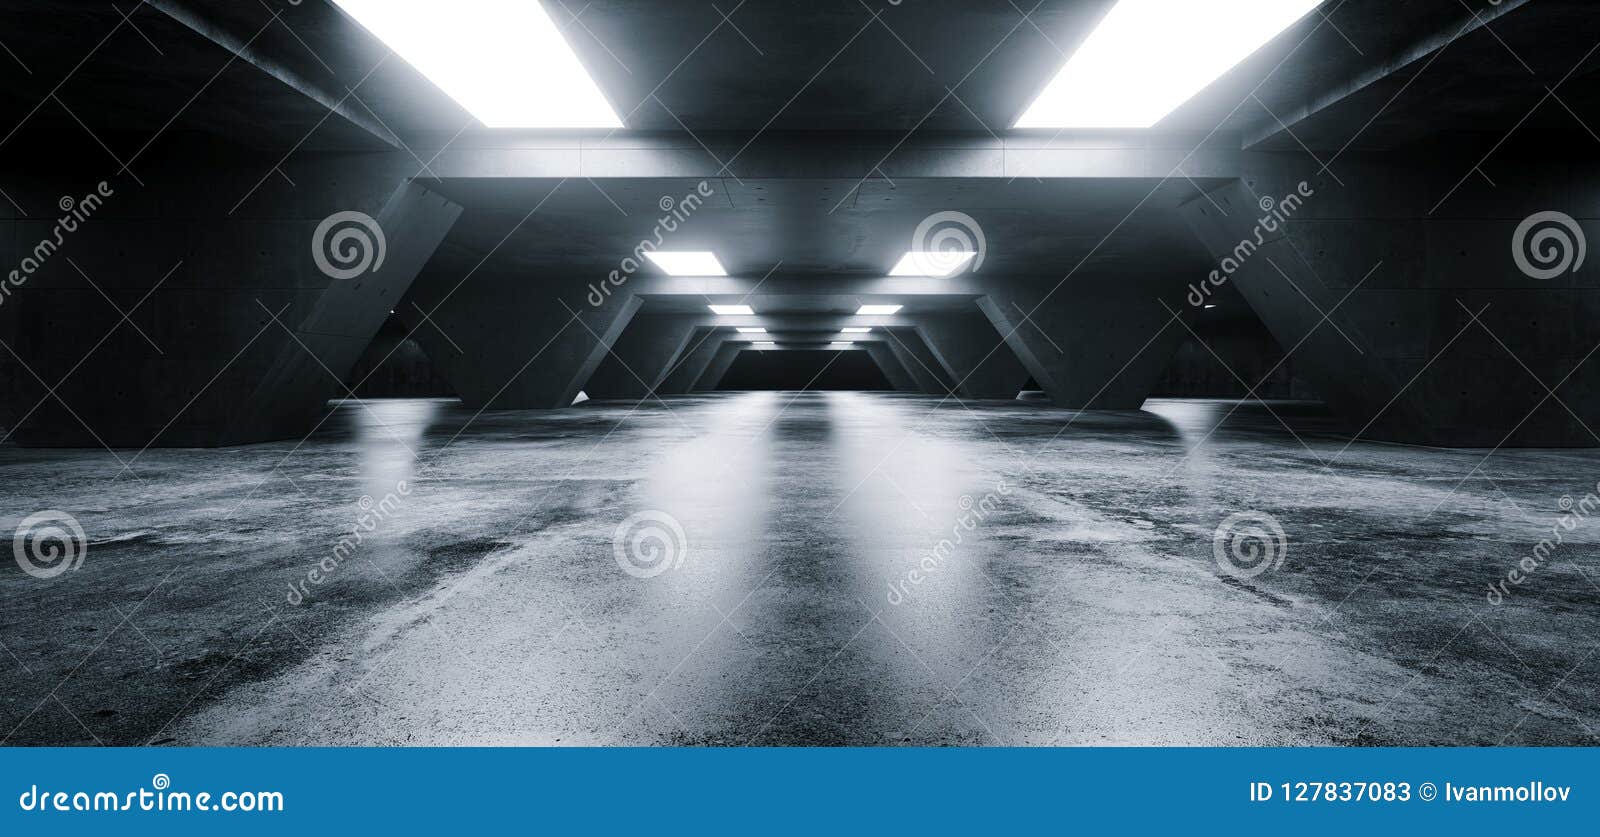 empty elegant modern grunge dark refletcions concrete underground tunnel room with bright white lights background wallpaper 3d re